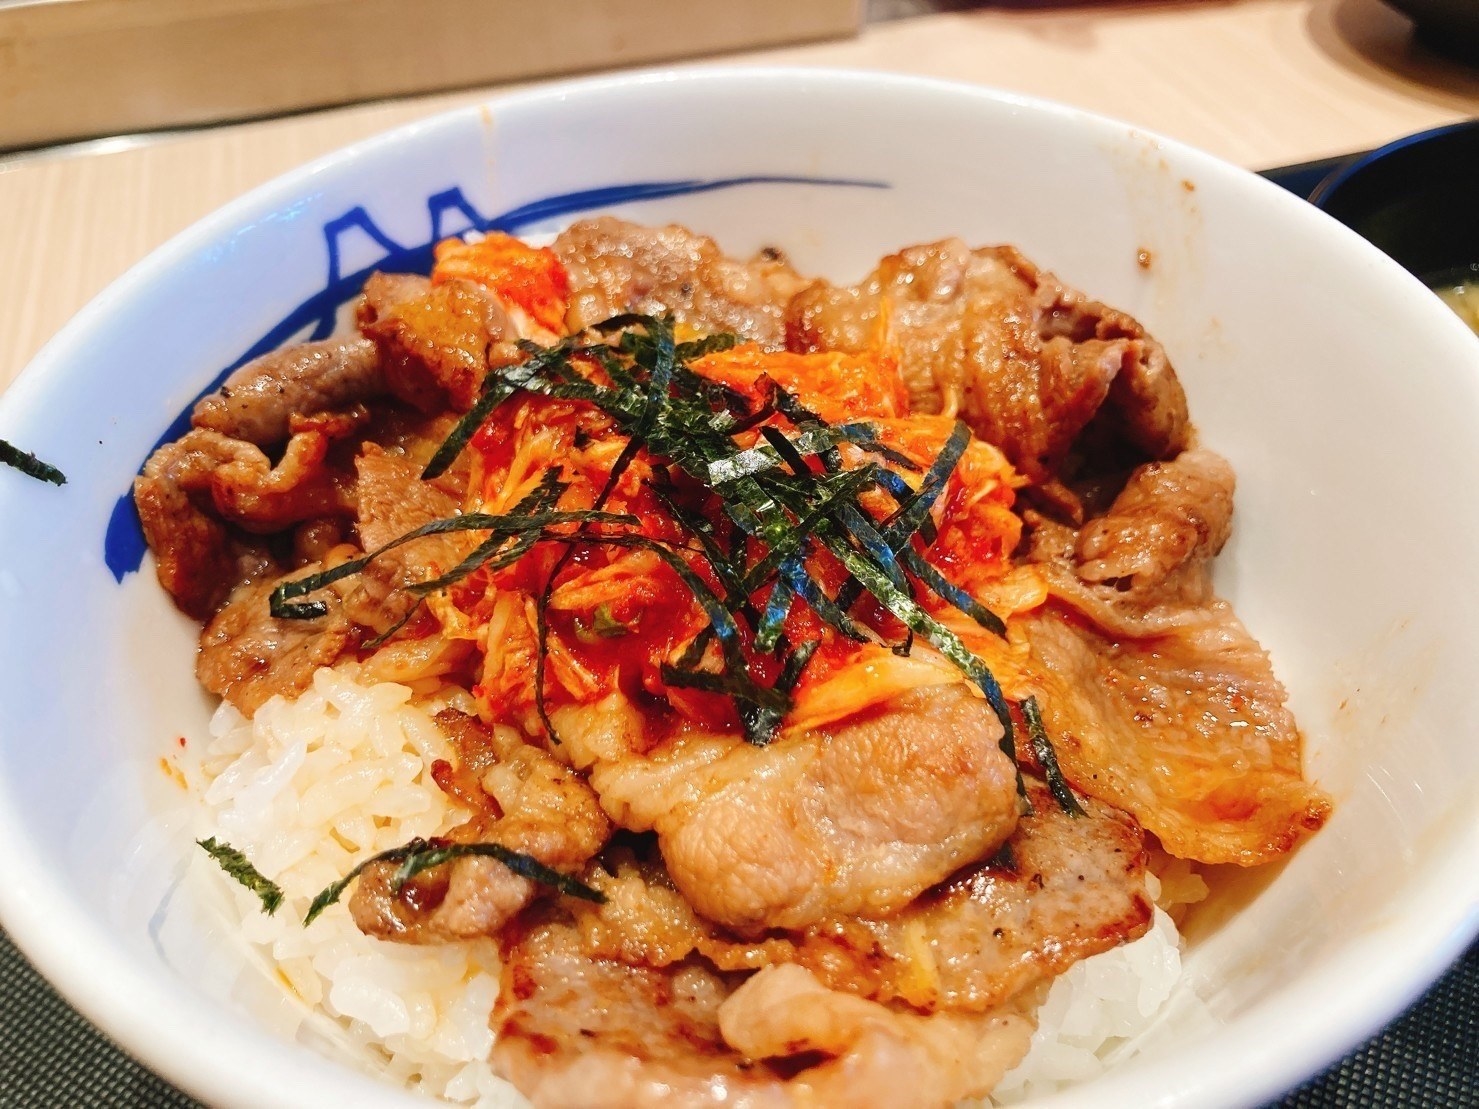 松屋のオススメメニュー「キムカル丼」おいしい食べ応えあるガッツリ満足グルメ